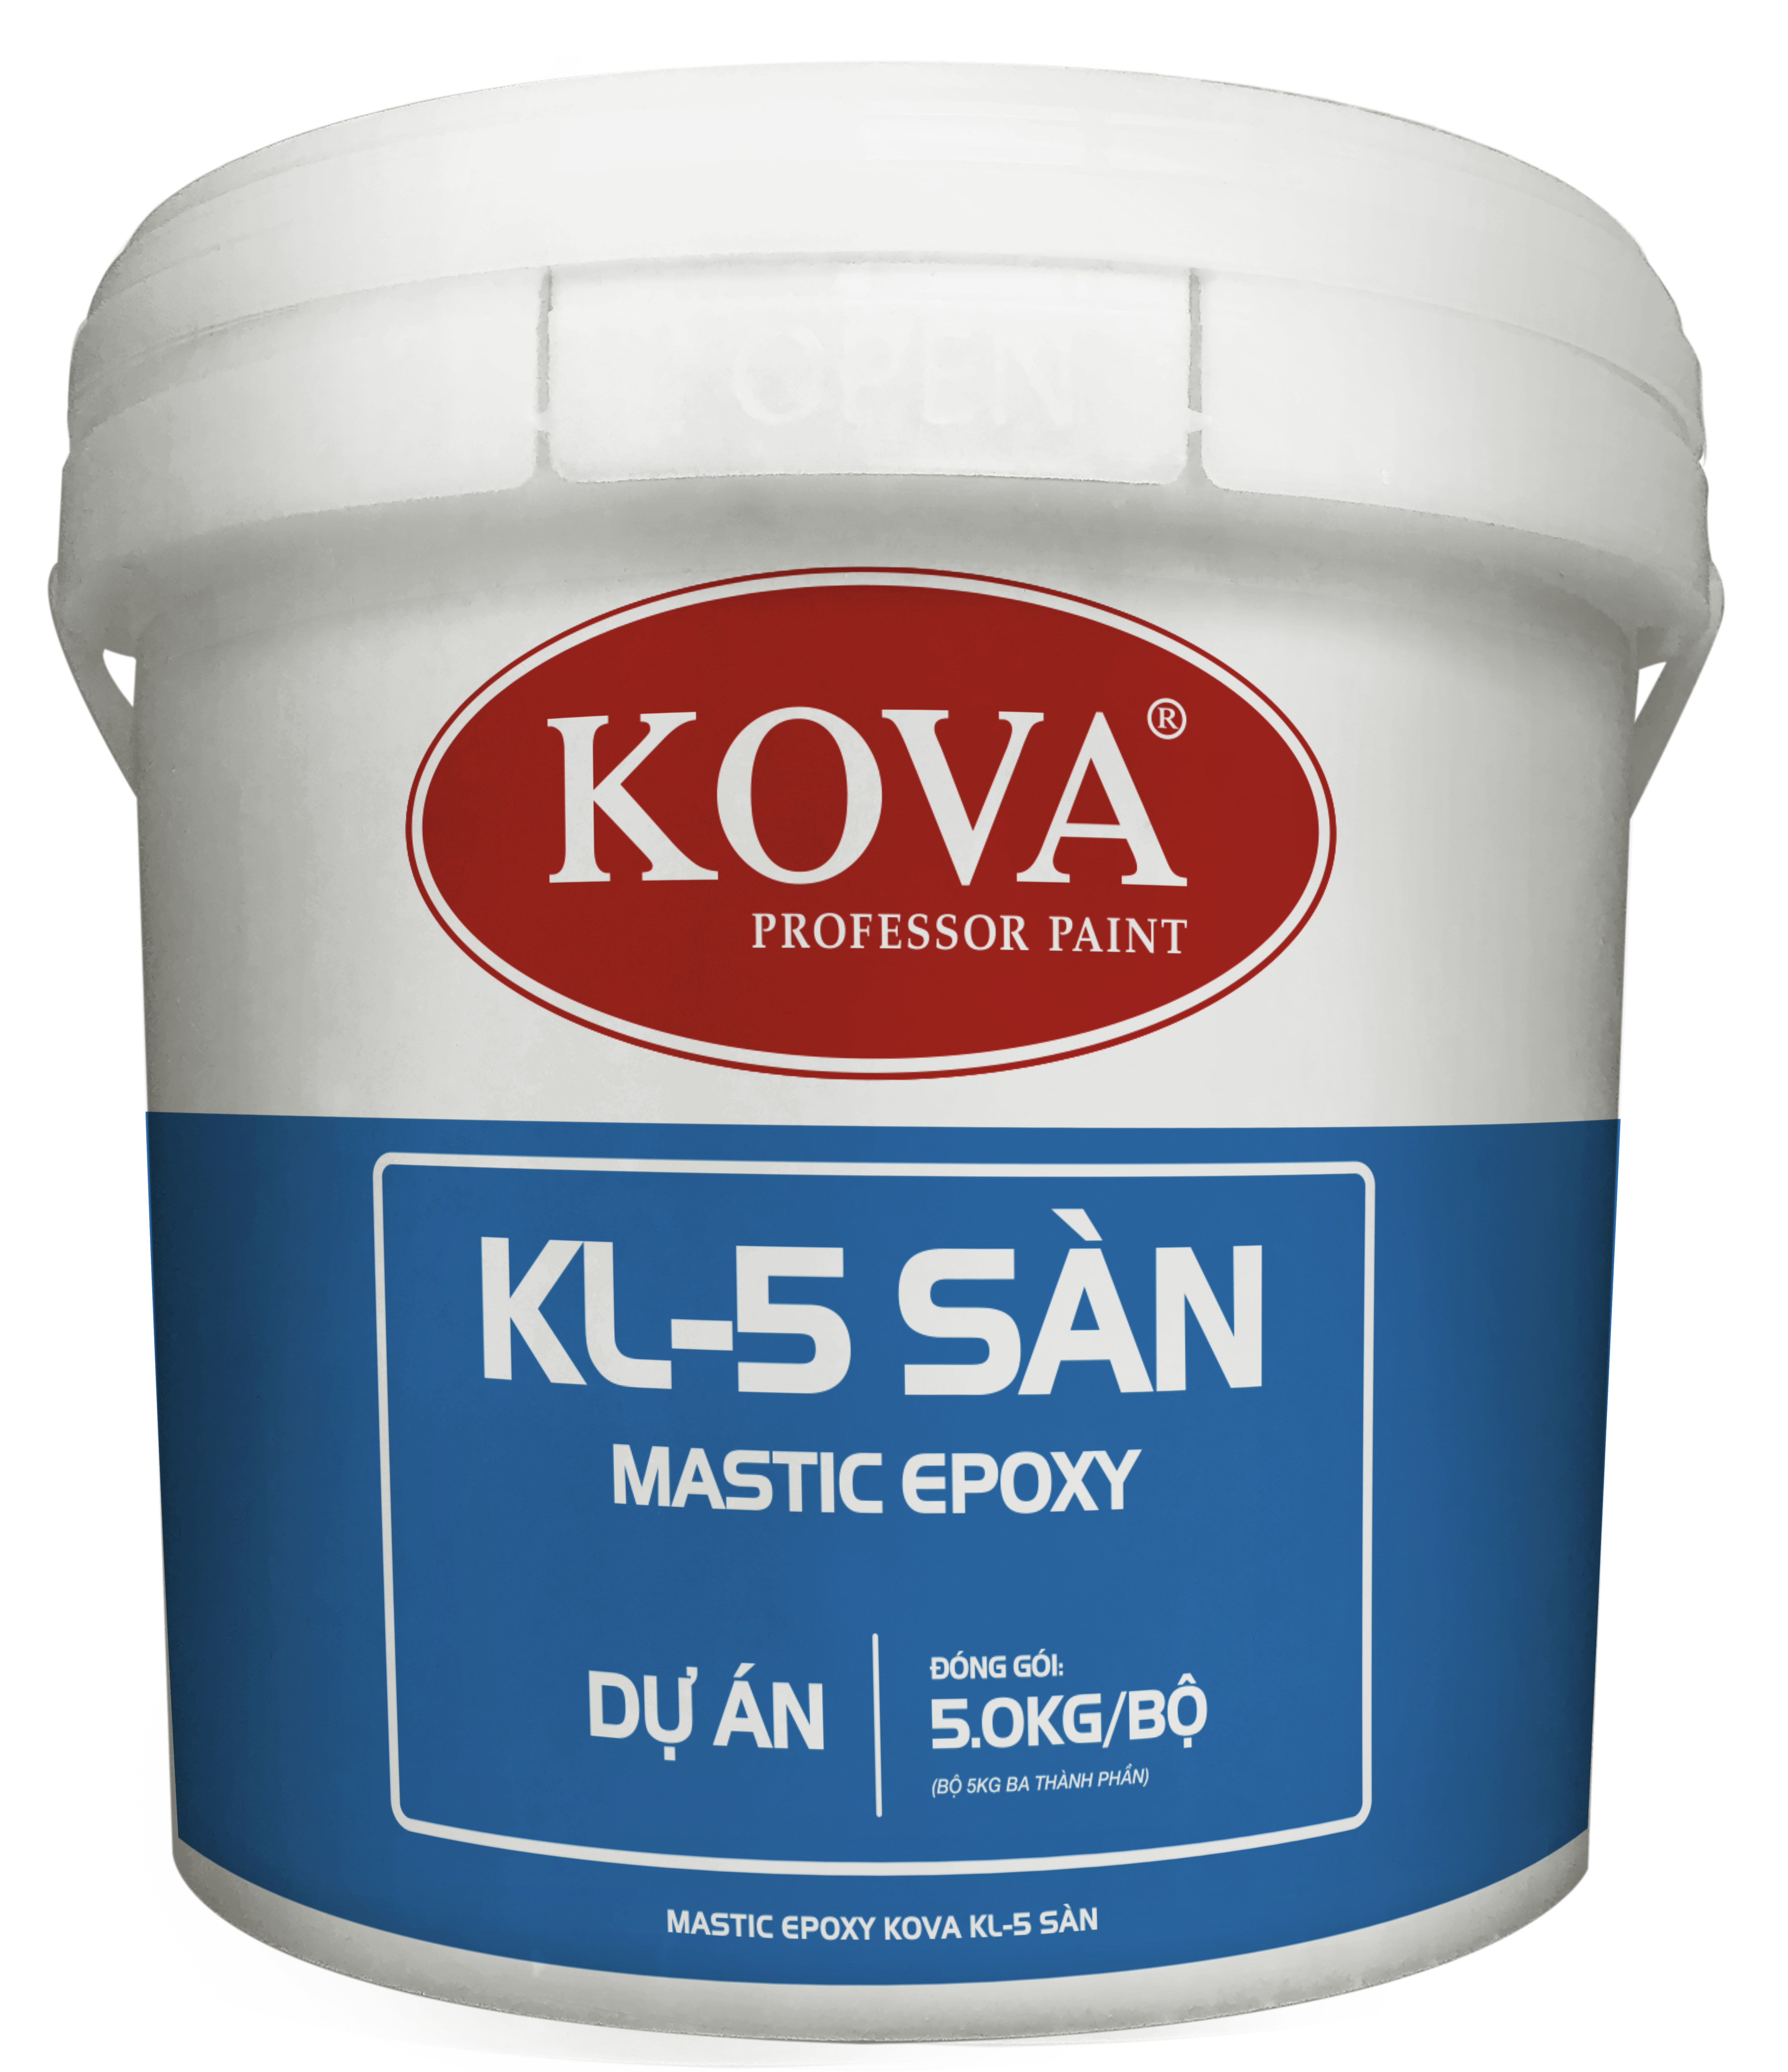 Mastic Epoxy KOVA KL-5 Sàn